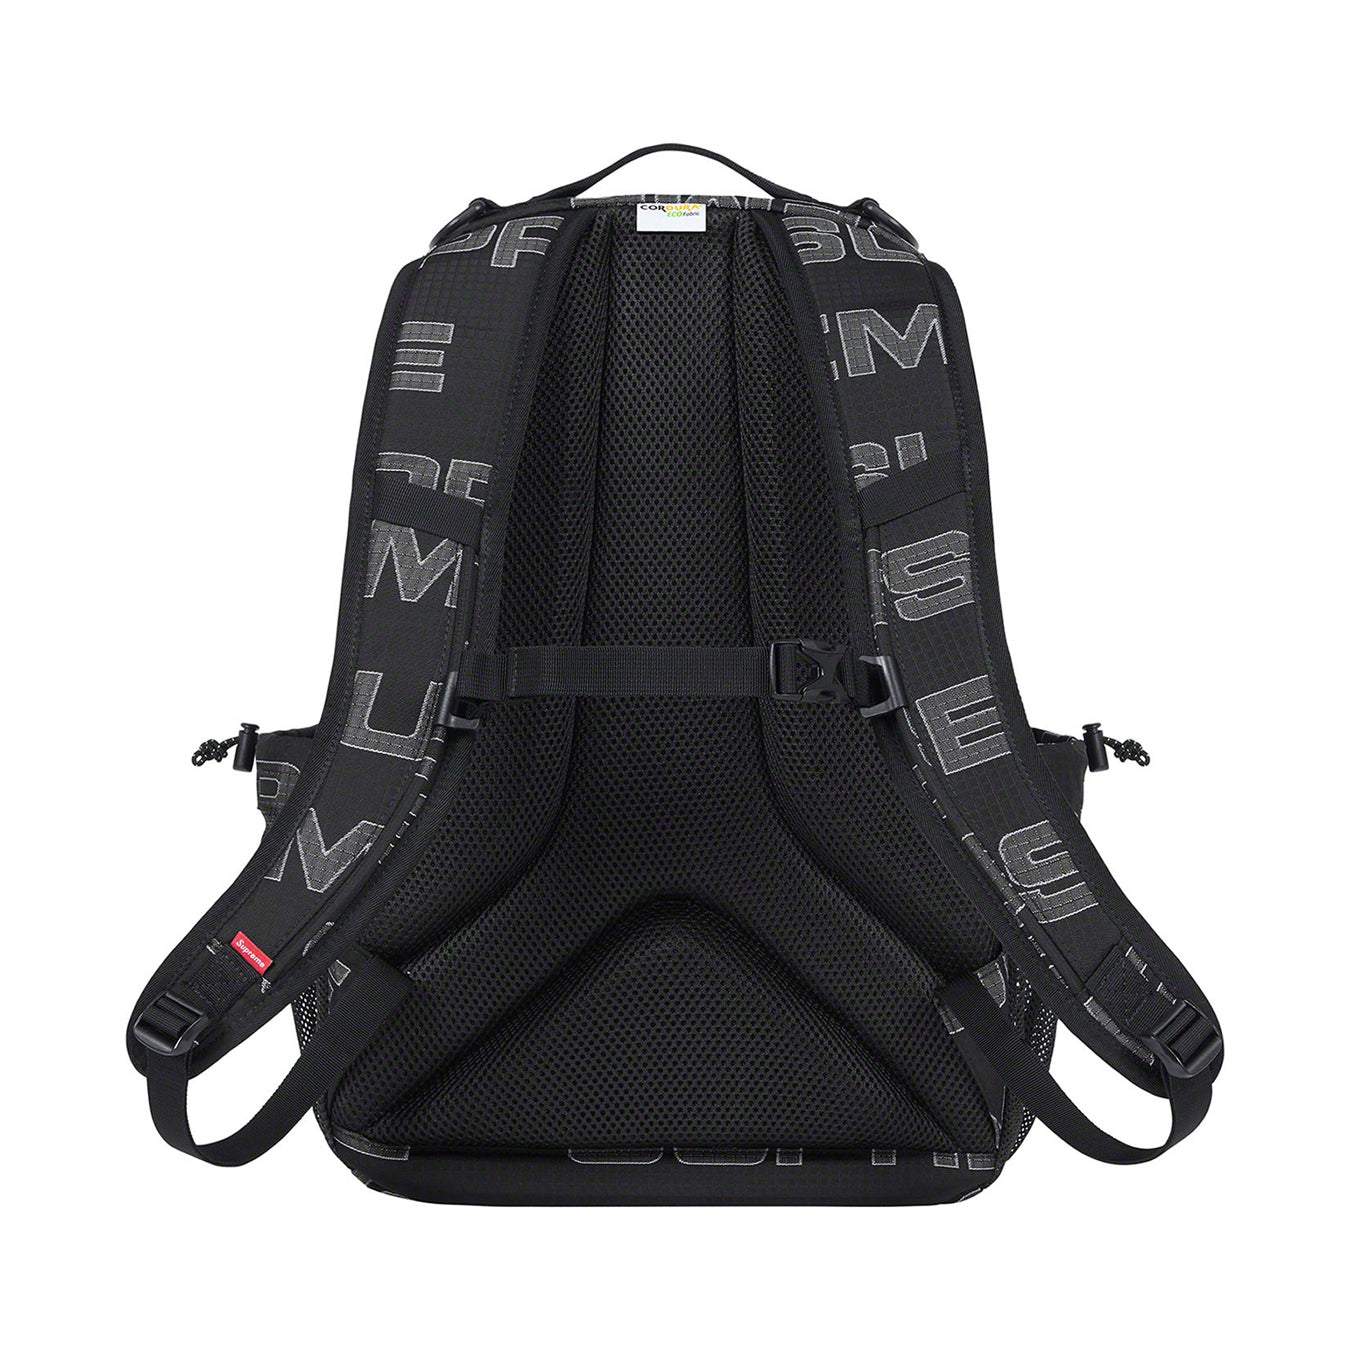 Supreme Backpack "Black"